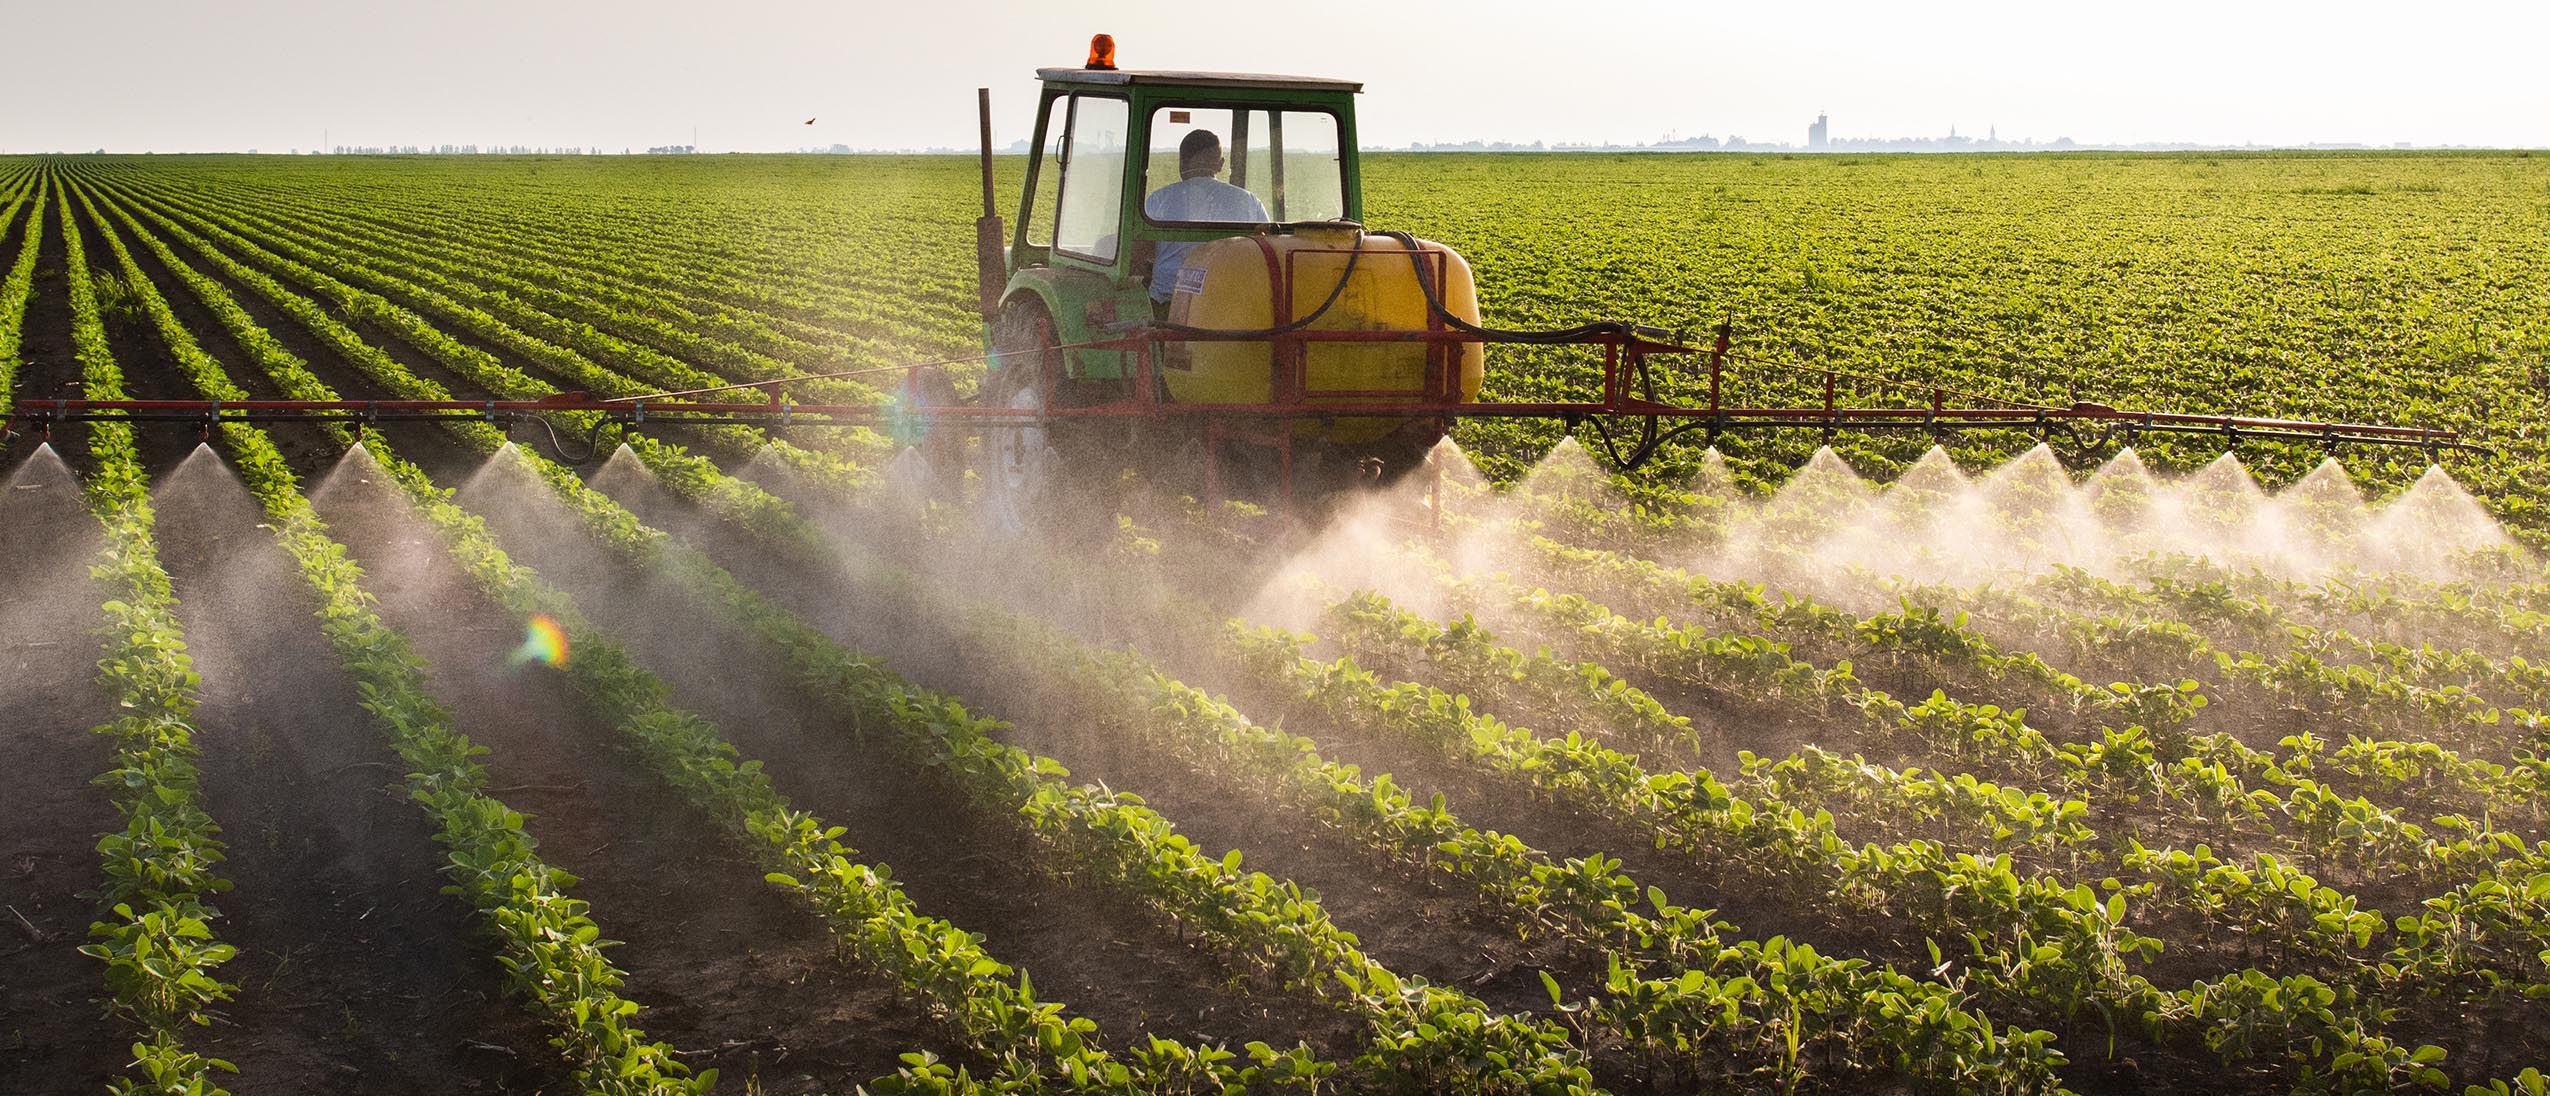 美国境内化肥供应商可能成为应对全球化肥短缺问题的关键